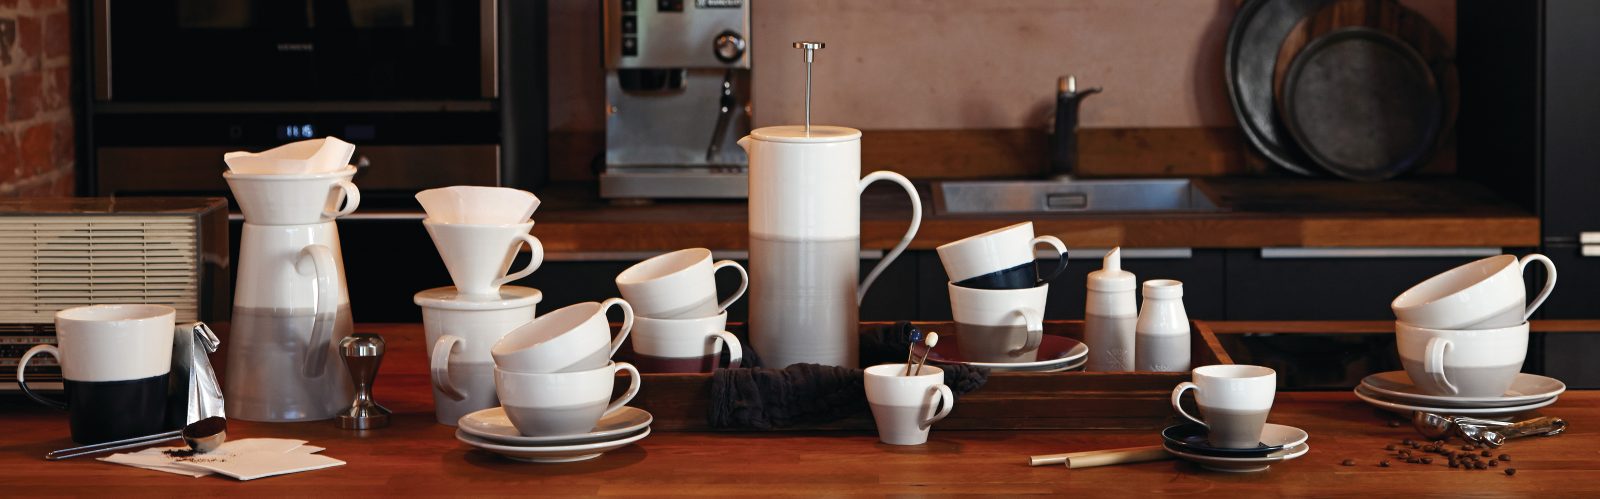 Coffee Studio by Royal Doulton | Kitchen Smart